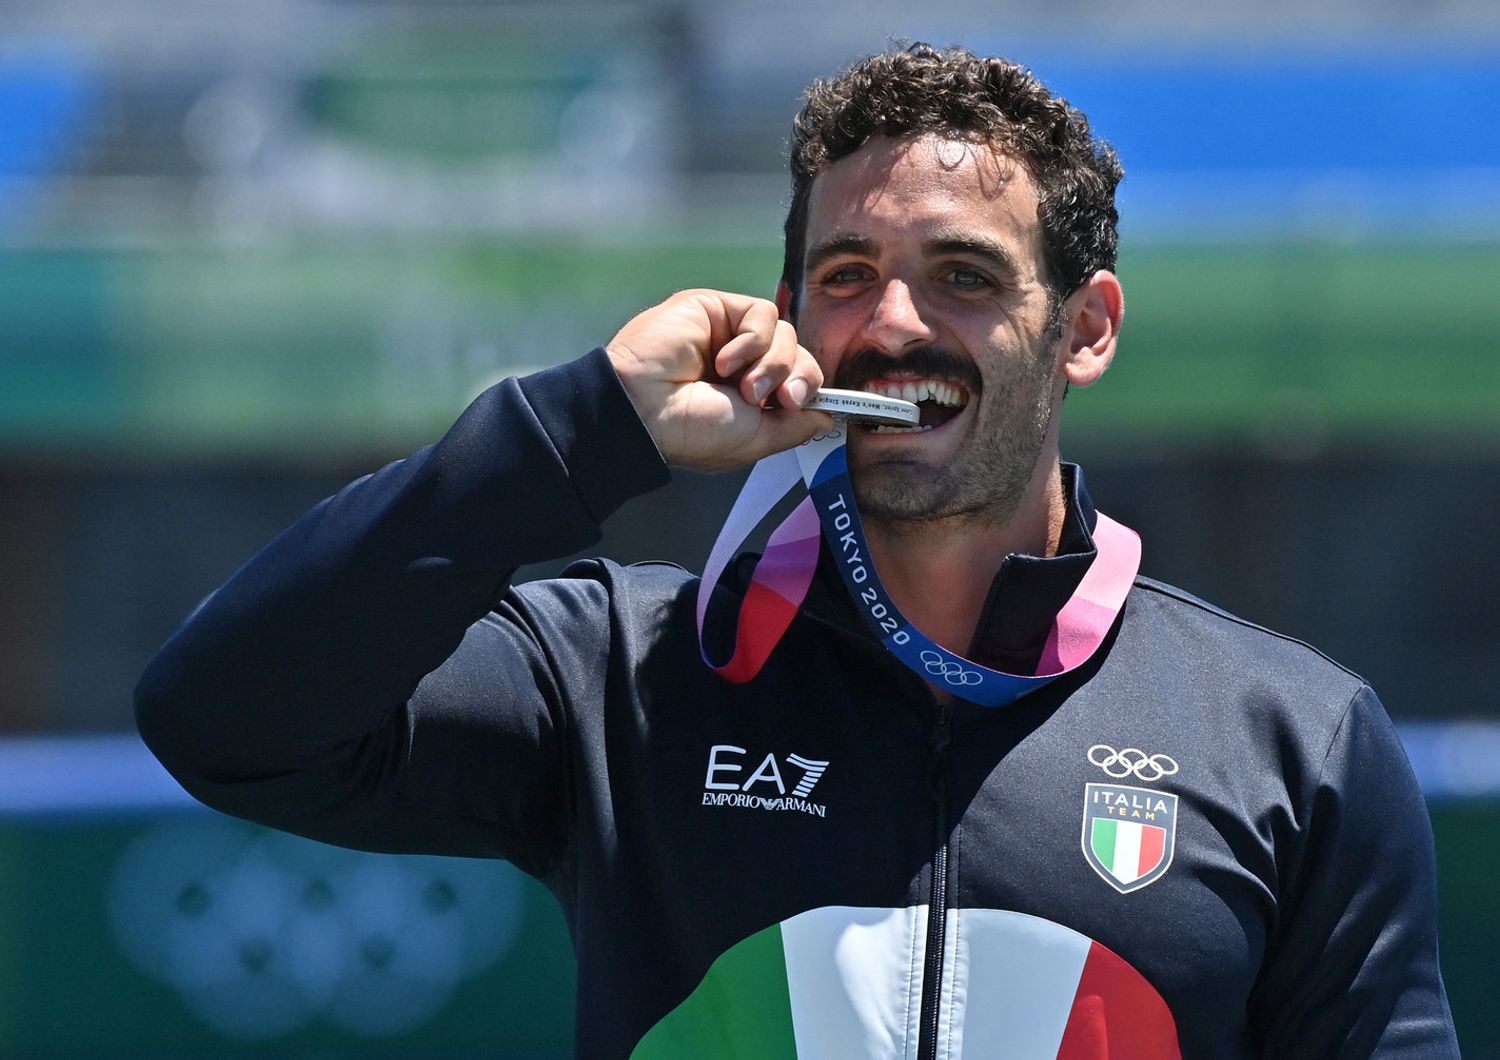 Medaglia d'argento dell'italiano Manfredi Rizza a Tokyo 2020